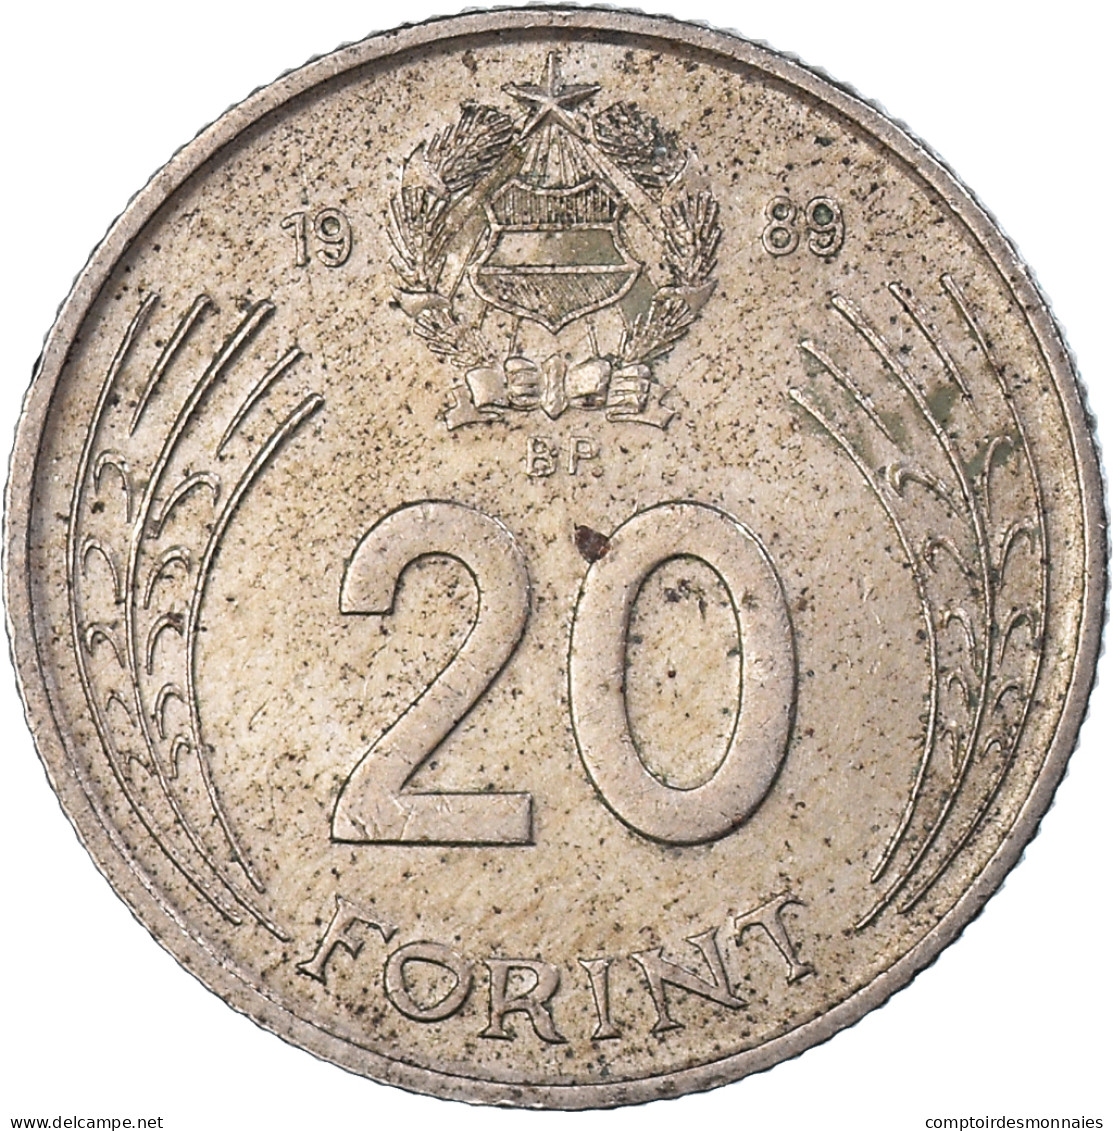 Monnaie, Hongrie, 20 Forint, 1989, TB+, Cupro-nickel, KM:630 - Hongrie